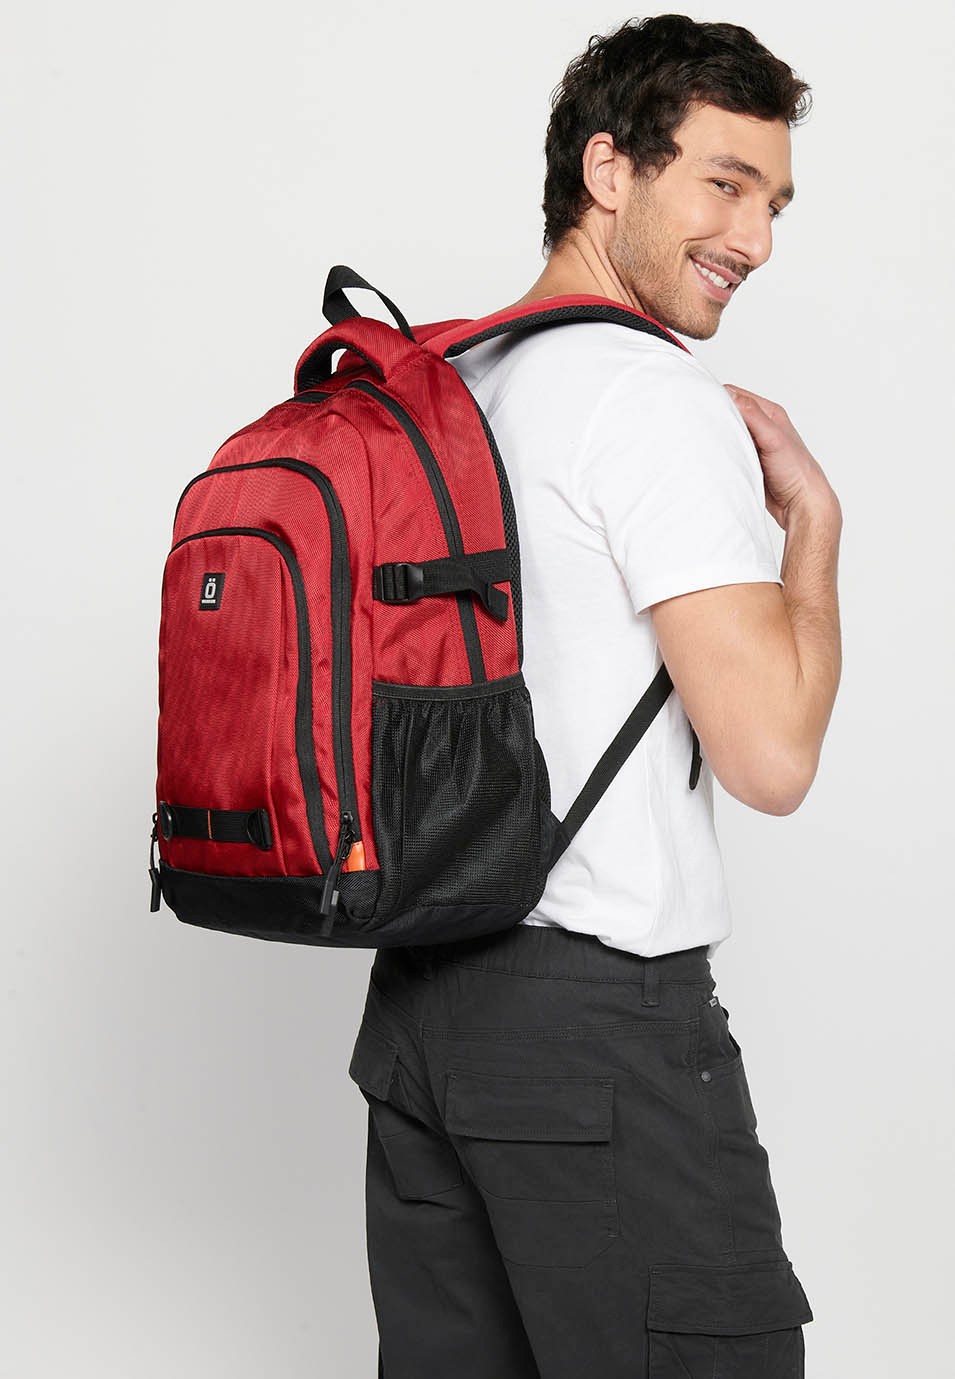 Koröshi-Rucksack mit drei Reißverschlussfächern, eines für Laptop, mit roten Innentaschen 9